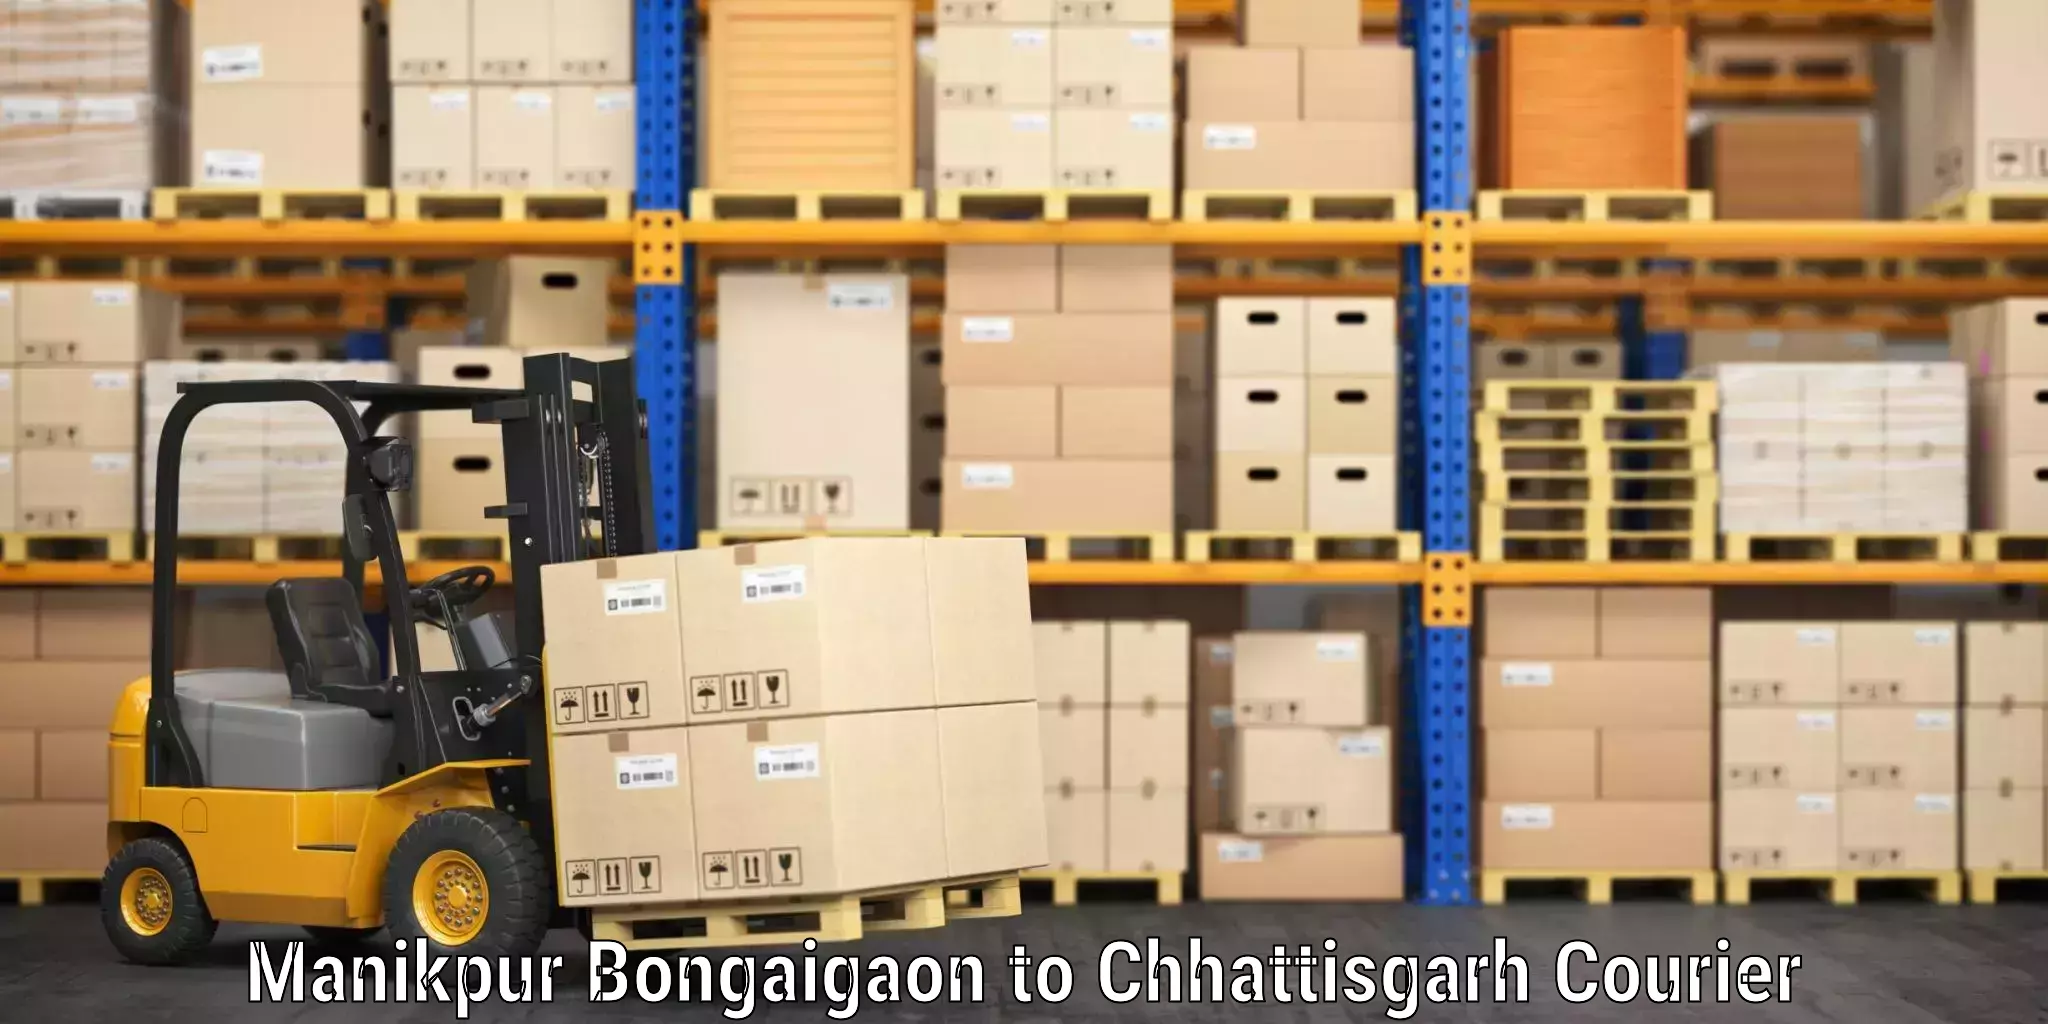 Luggage shipment tracking Manikpur Bongaigaon to Pakhanjur